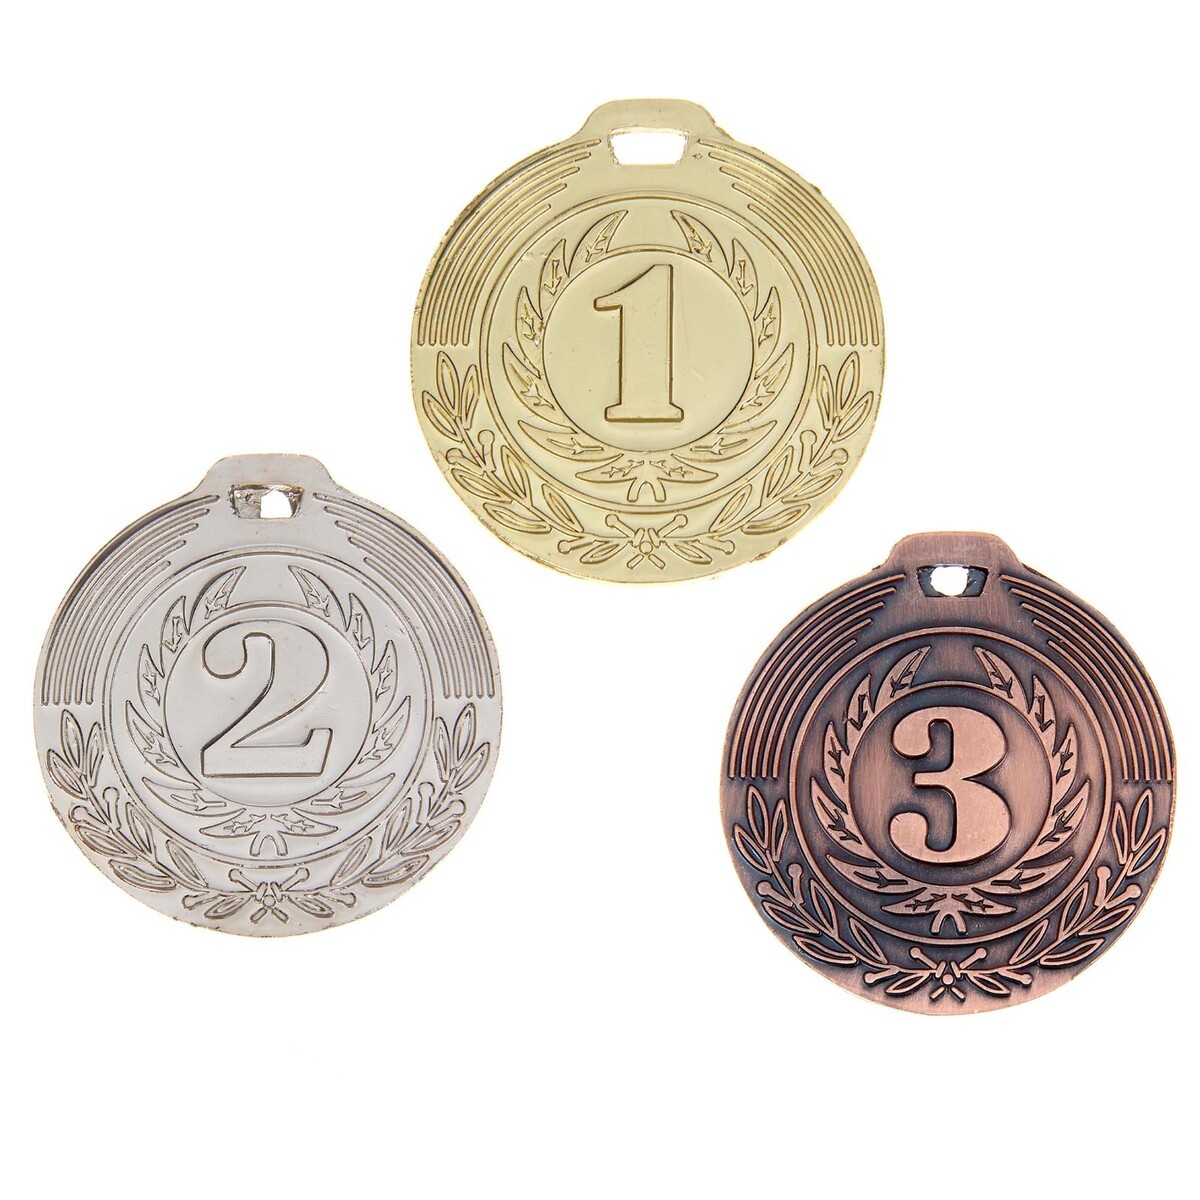 Медаль призовая 021 диам 4 см. 3 место. цвет бронз. без ленты 3 ряд 17 место